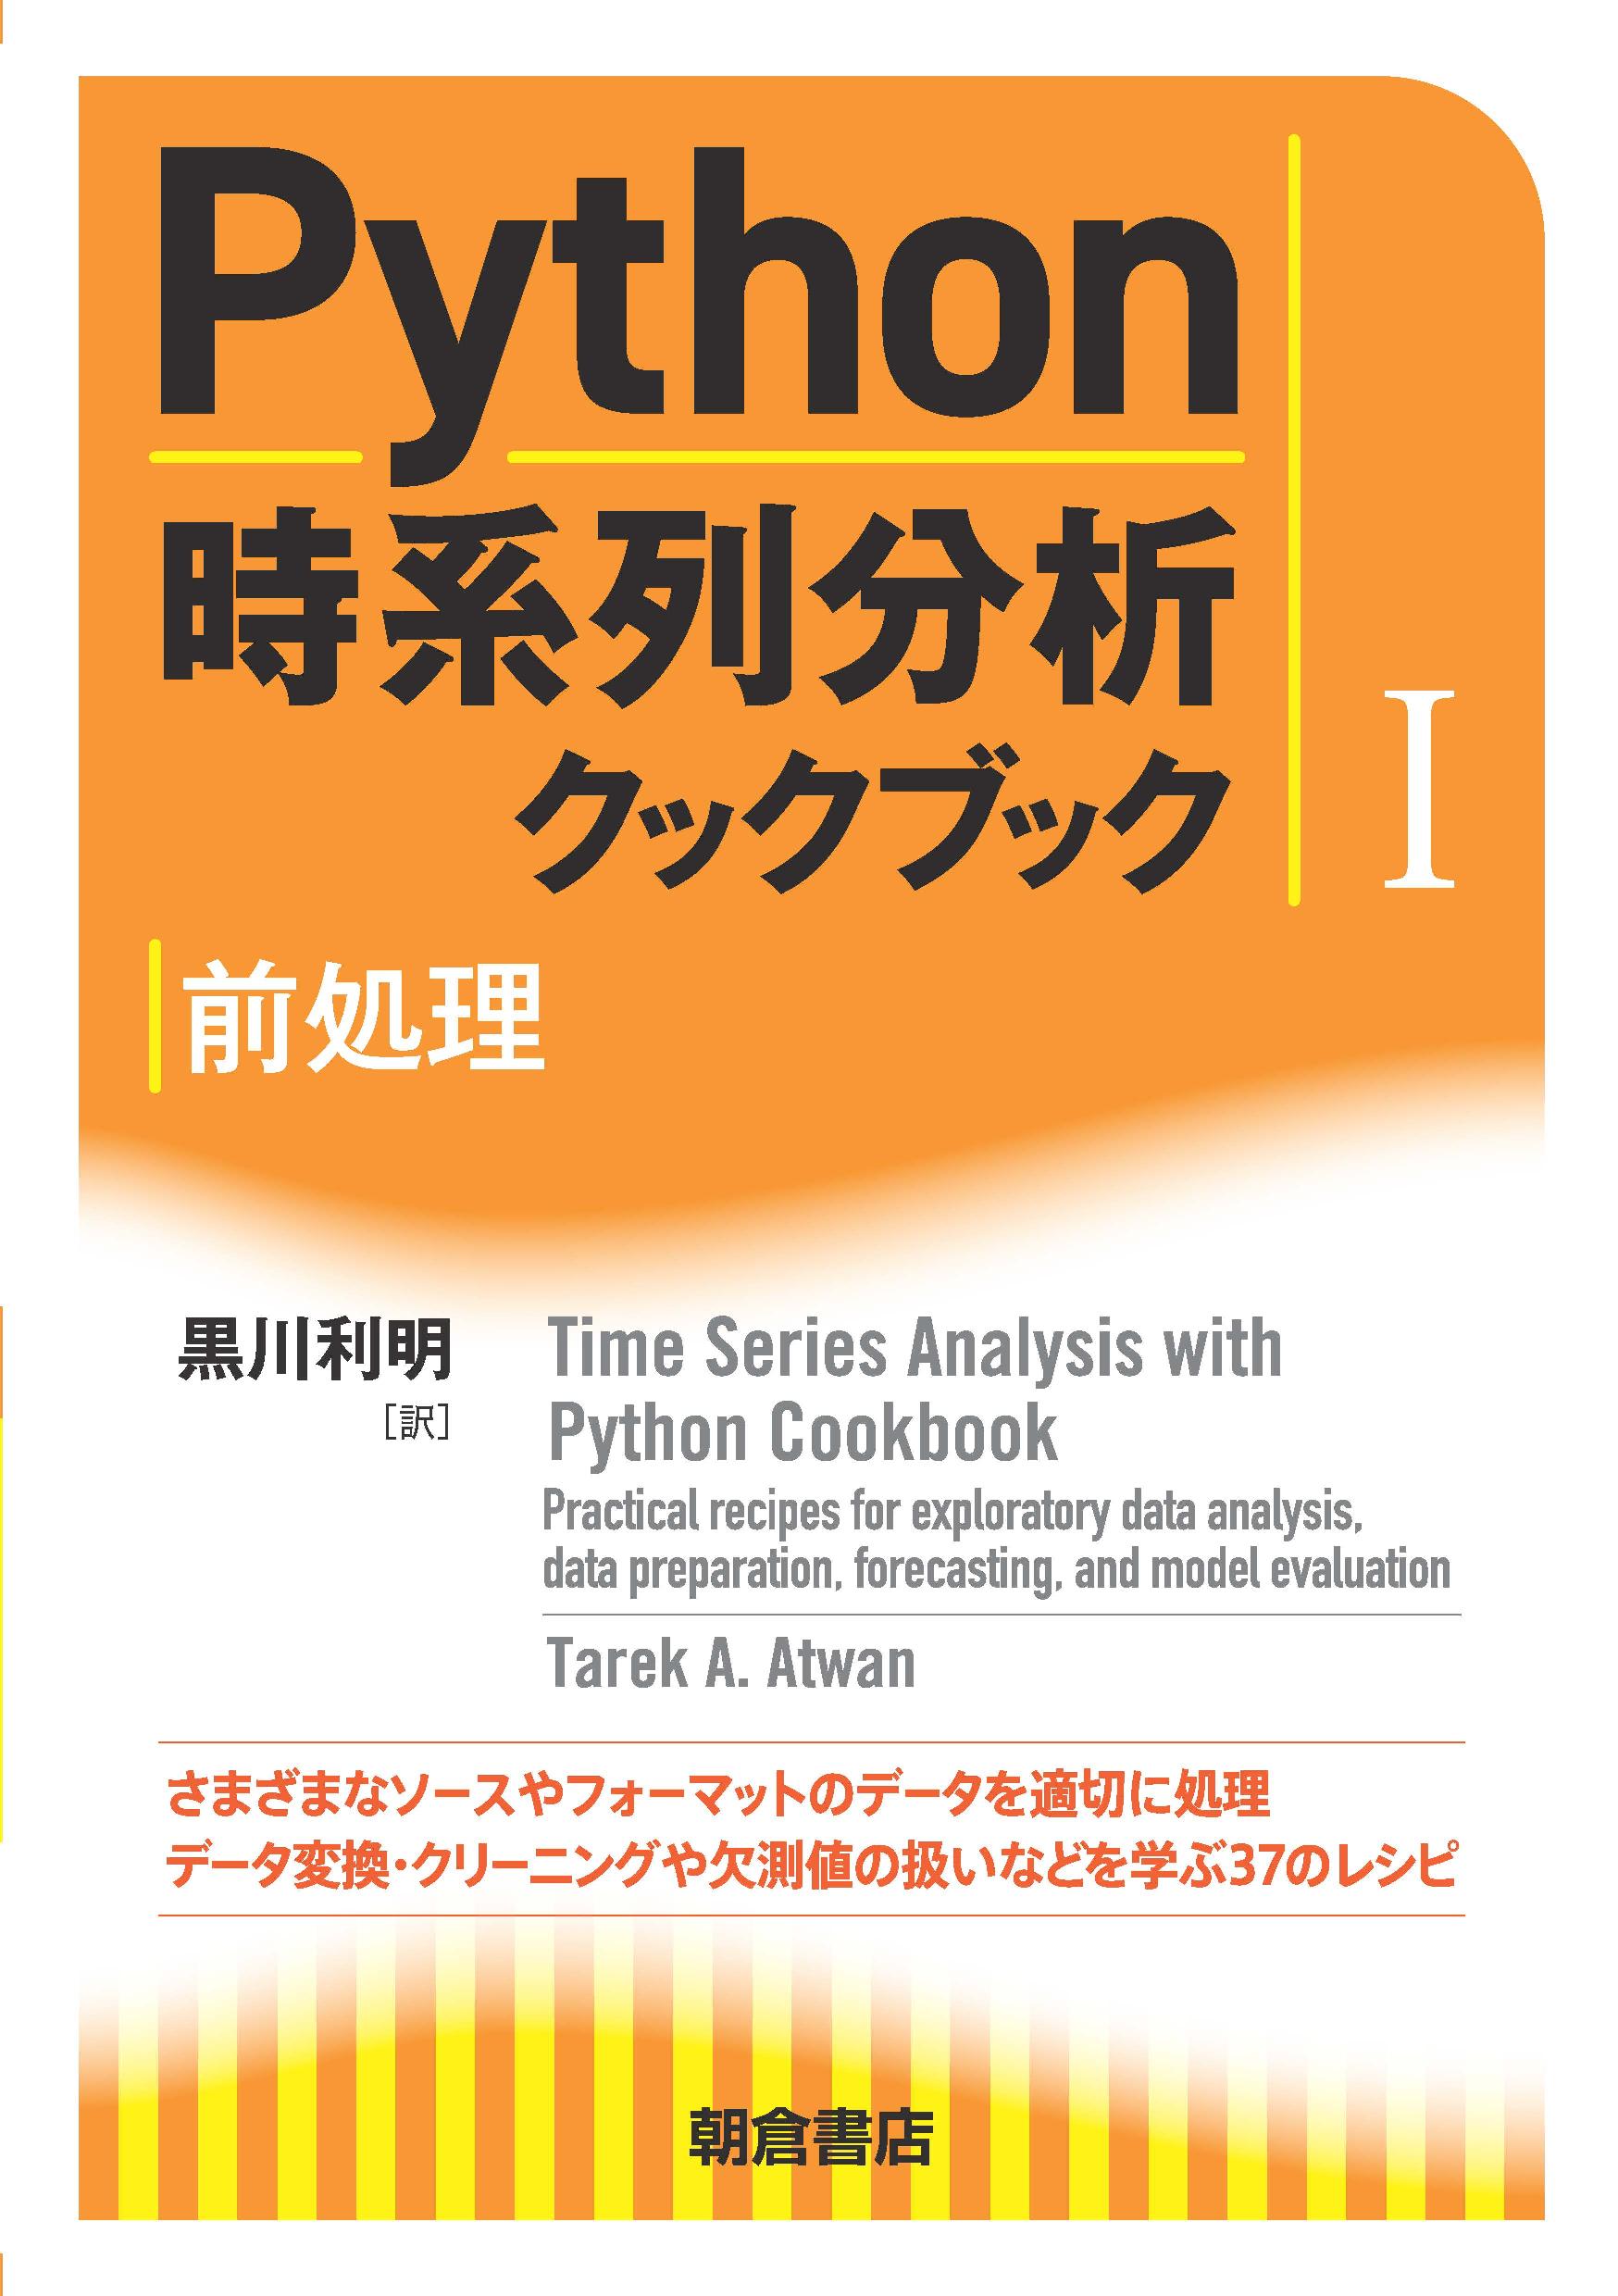 : Python時系列分析クックブック I 